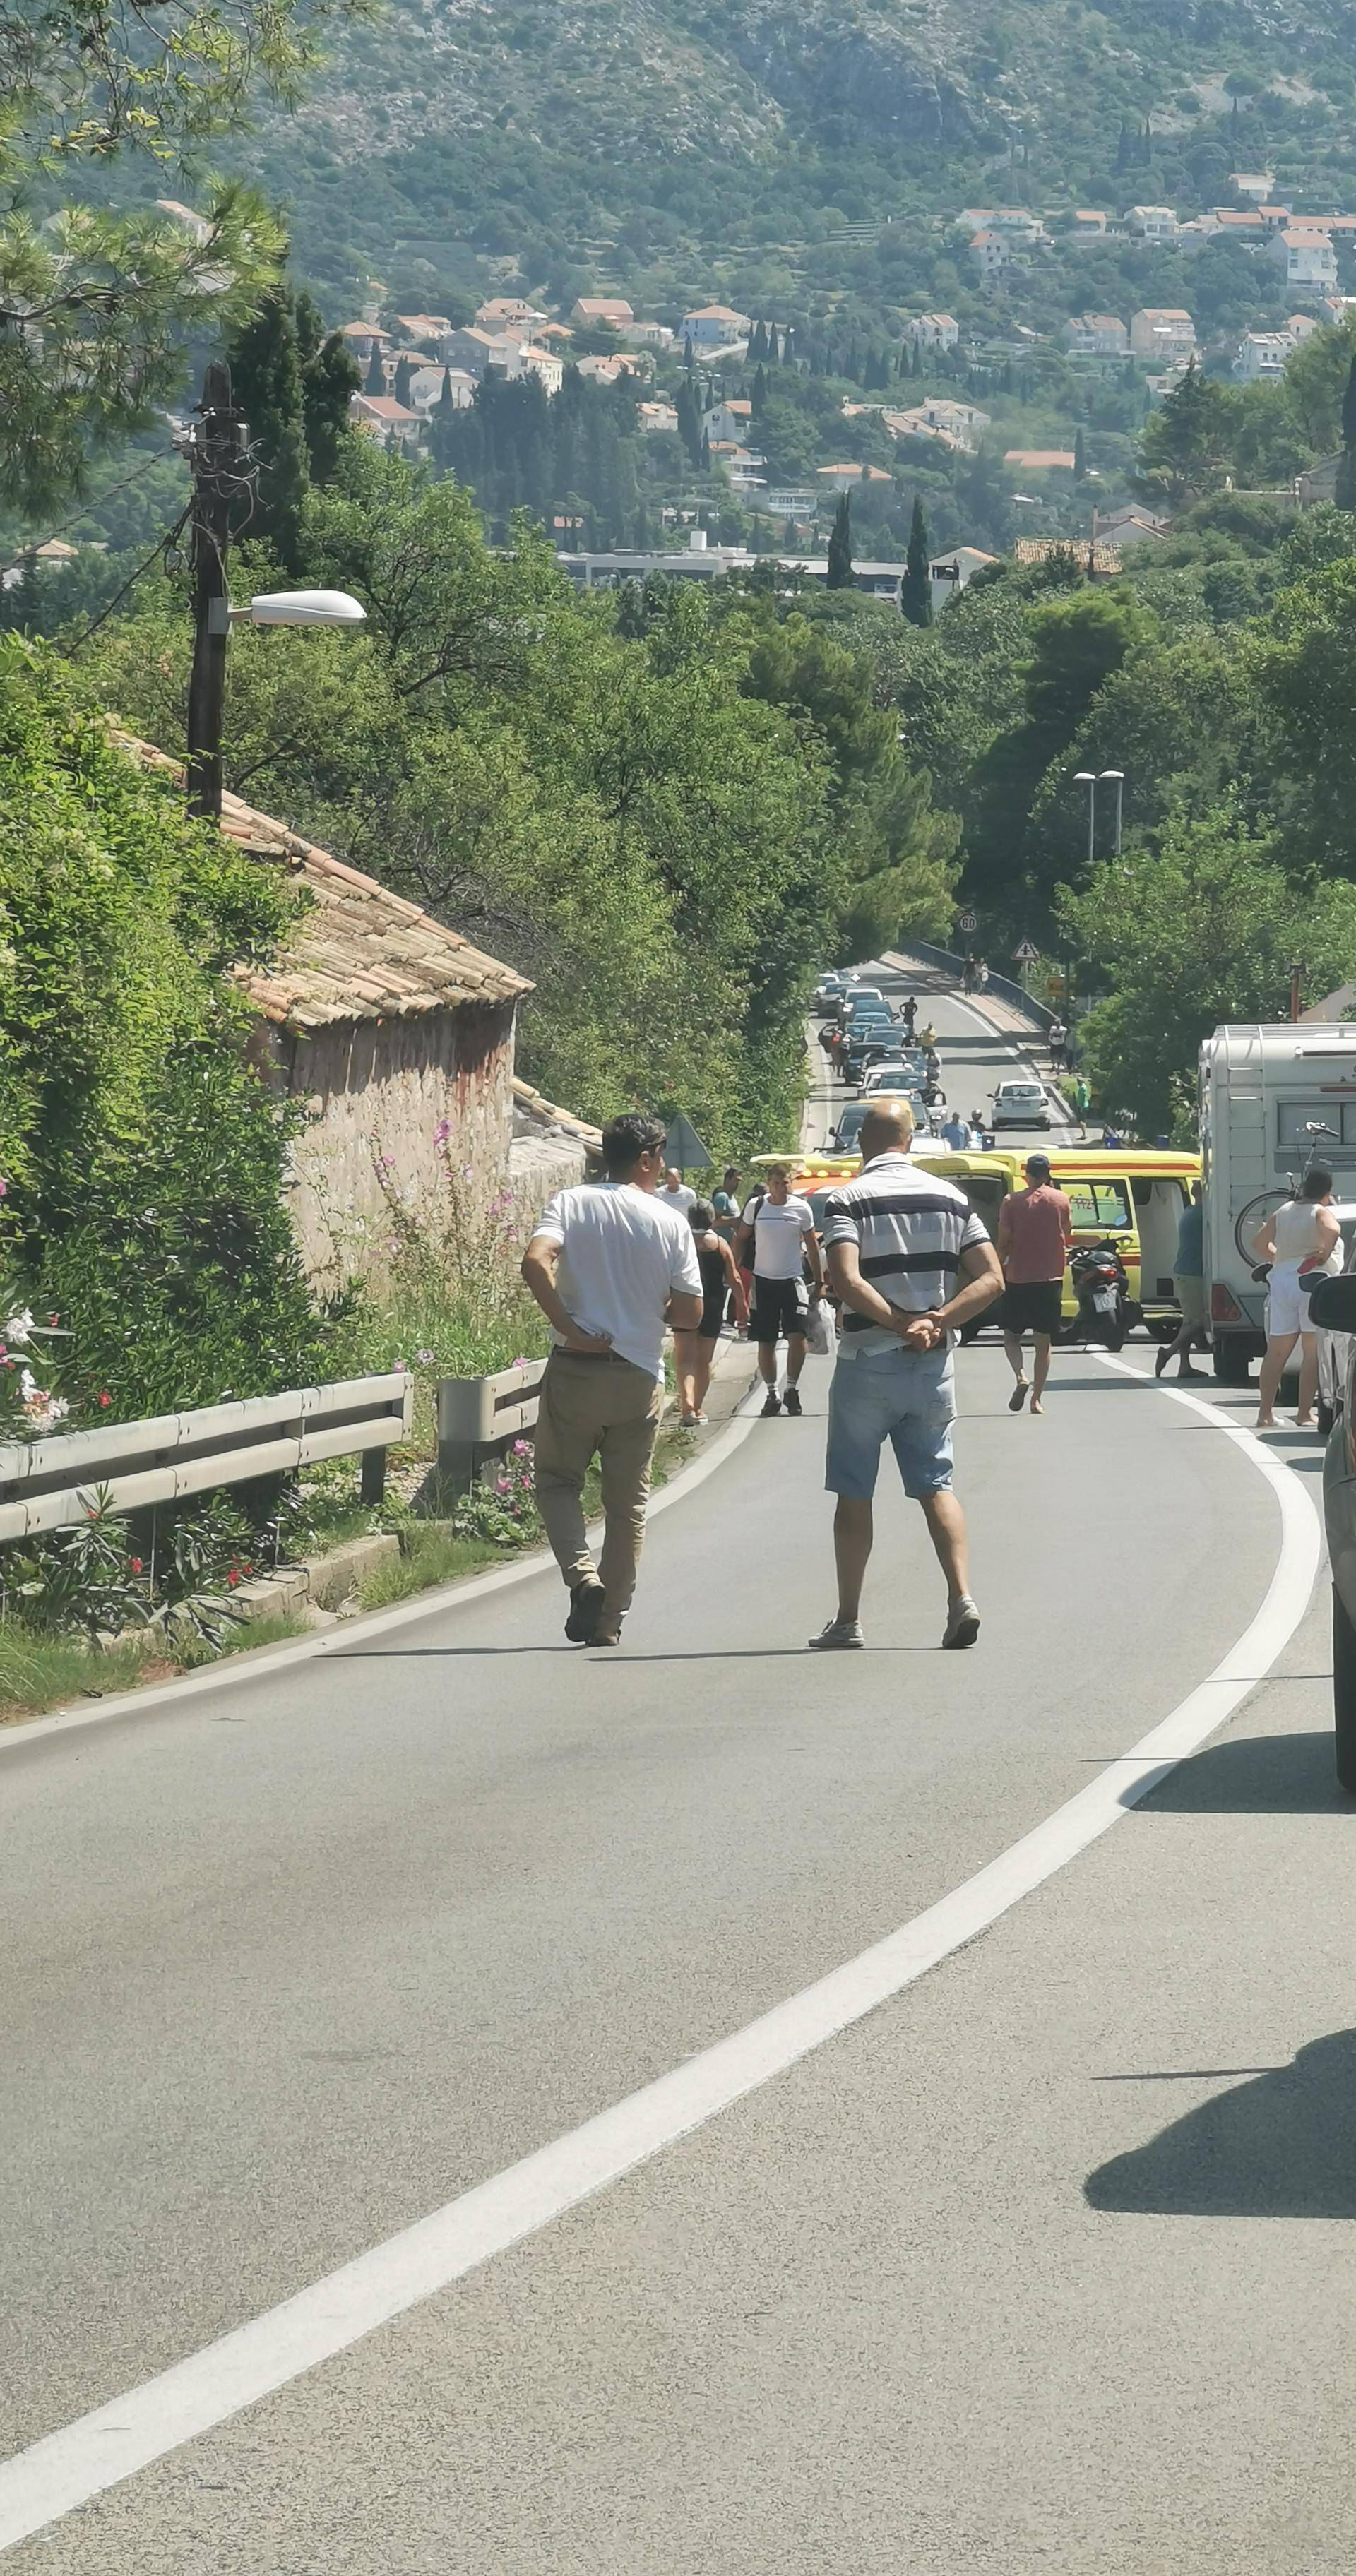 Auto i motor sudarili se kod Dubrovnika, dvoje u bolnici